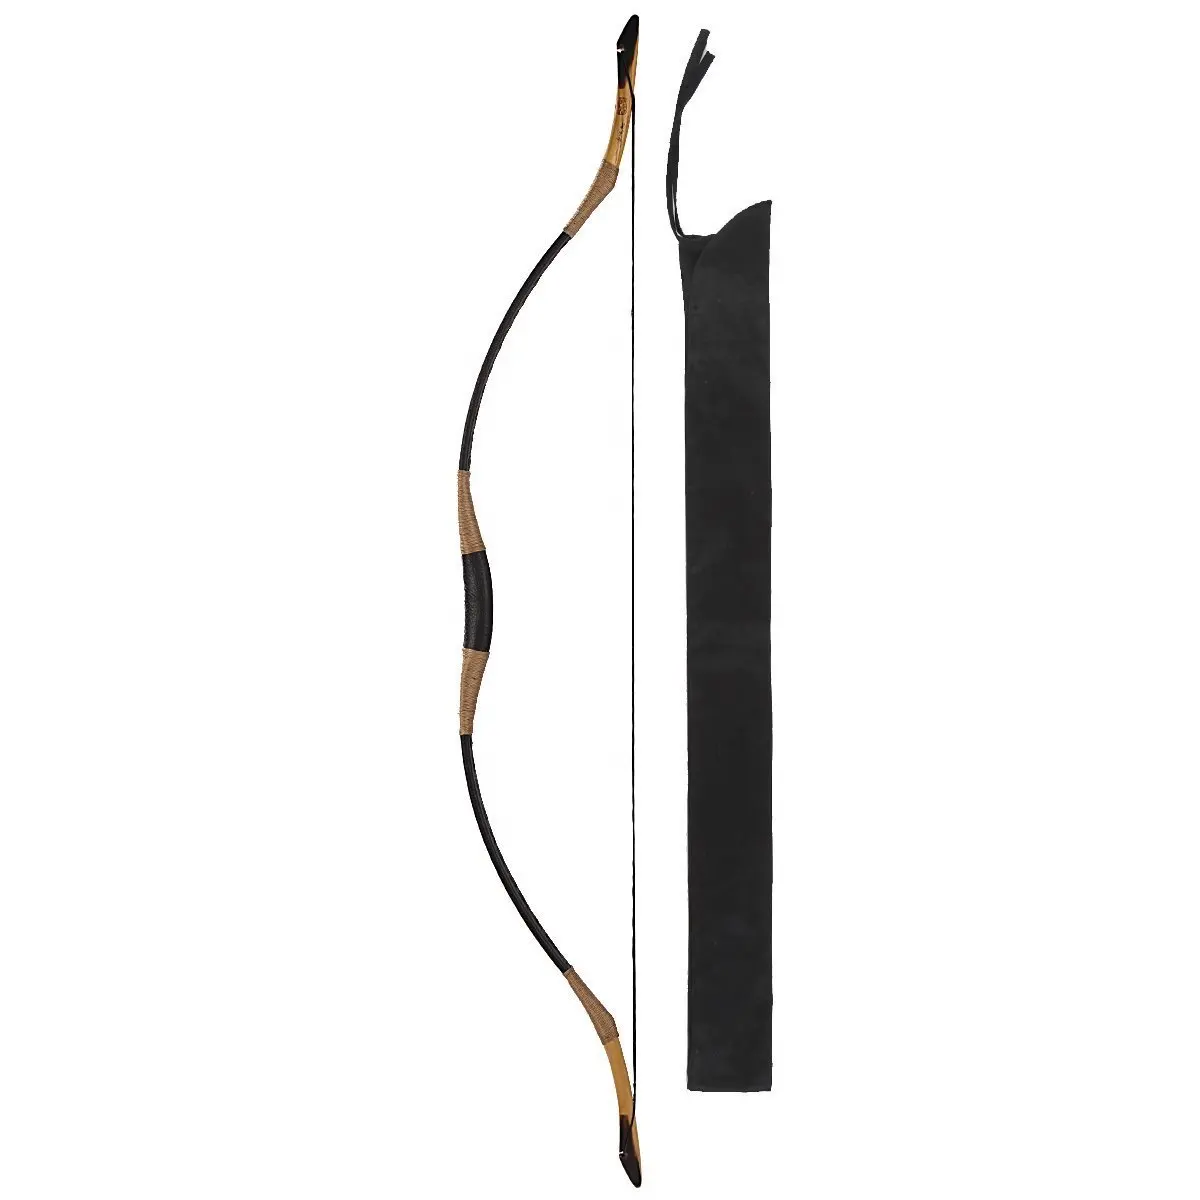 Alibow-Arco de fibra de vidrio para caza, arco tradicional de hundimiento pesado con bocina OX, recurvo, 70-110 libras, hecho a mano